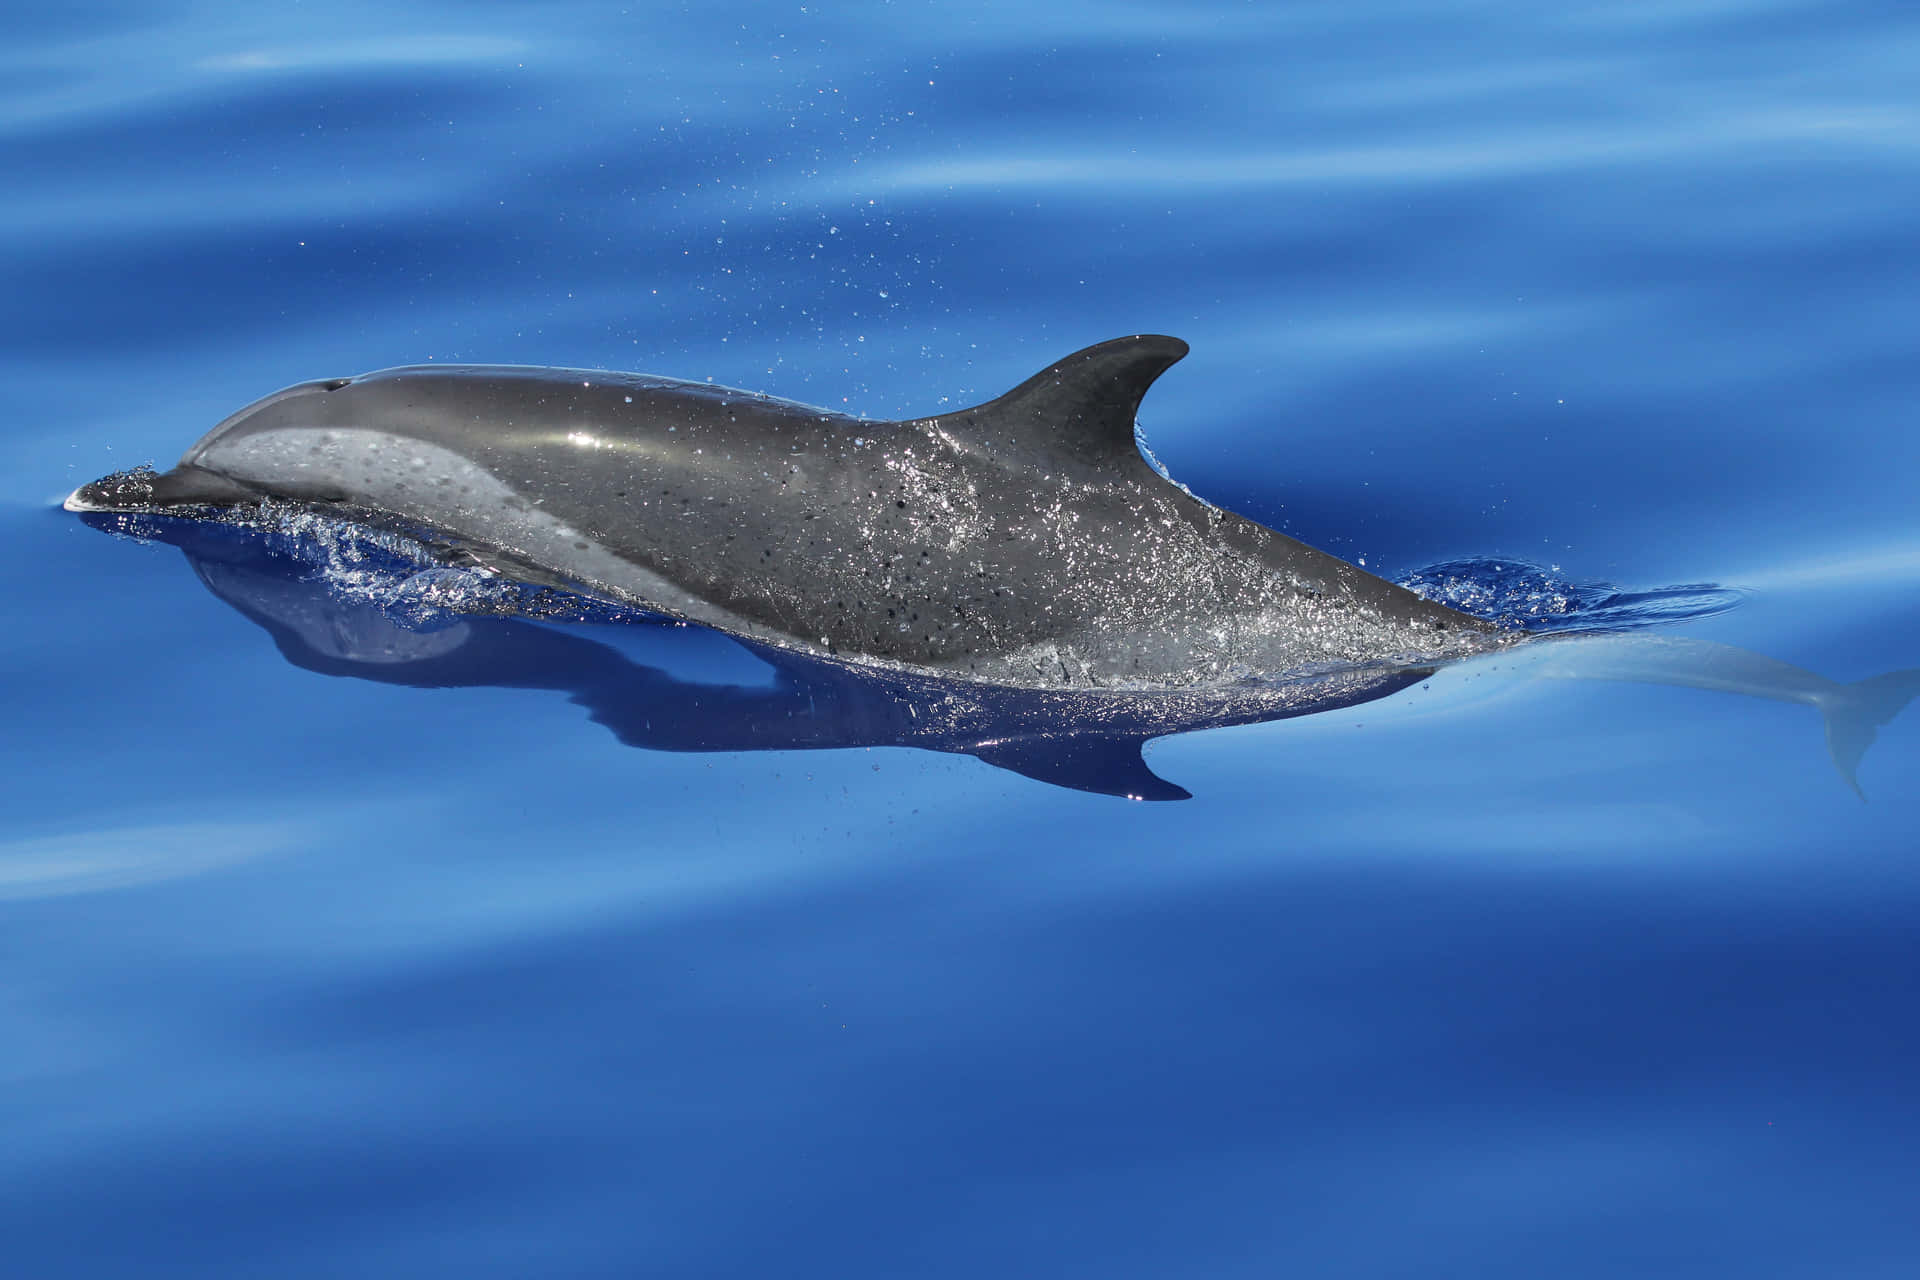 Einidyllischer Moment Mit Einem Wunderschönen Delfin